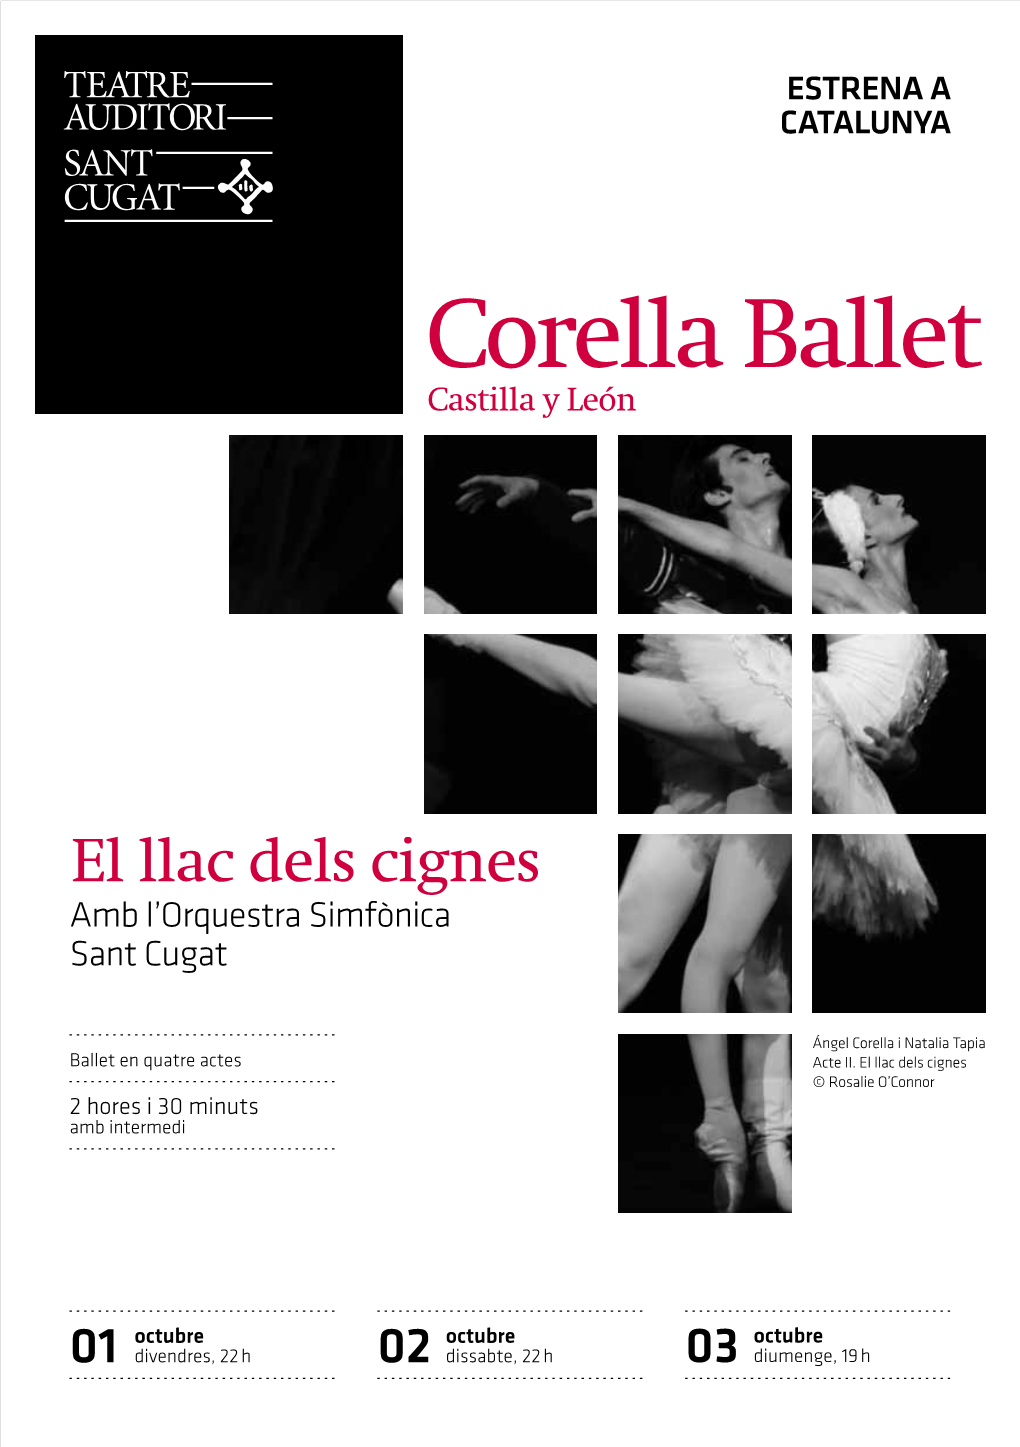 Corella Ballet Castilla Y León